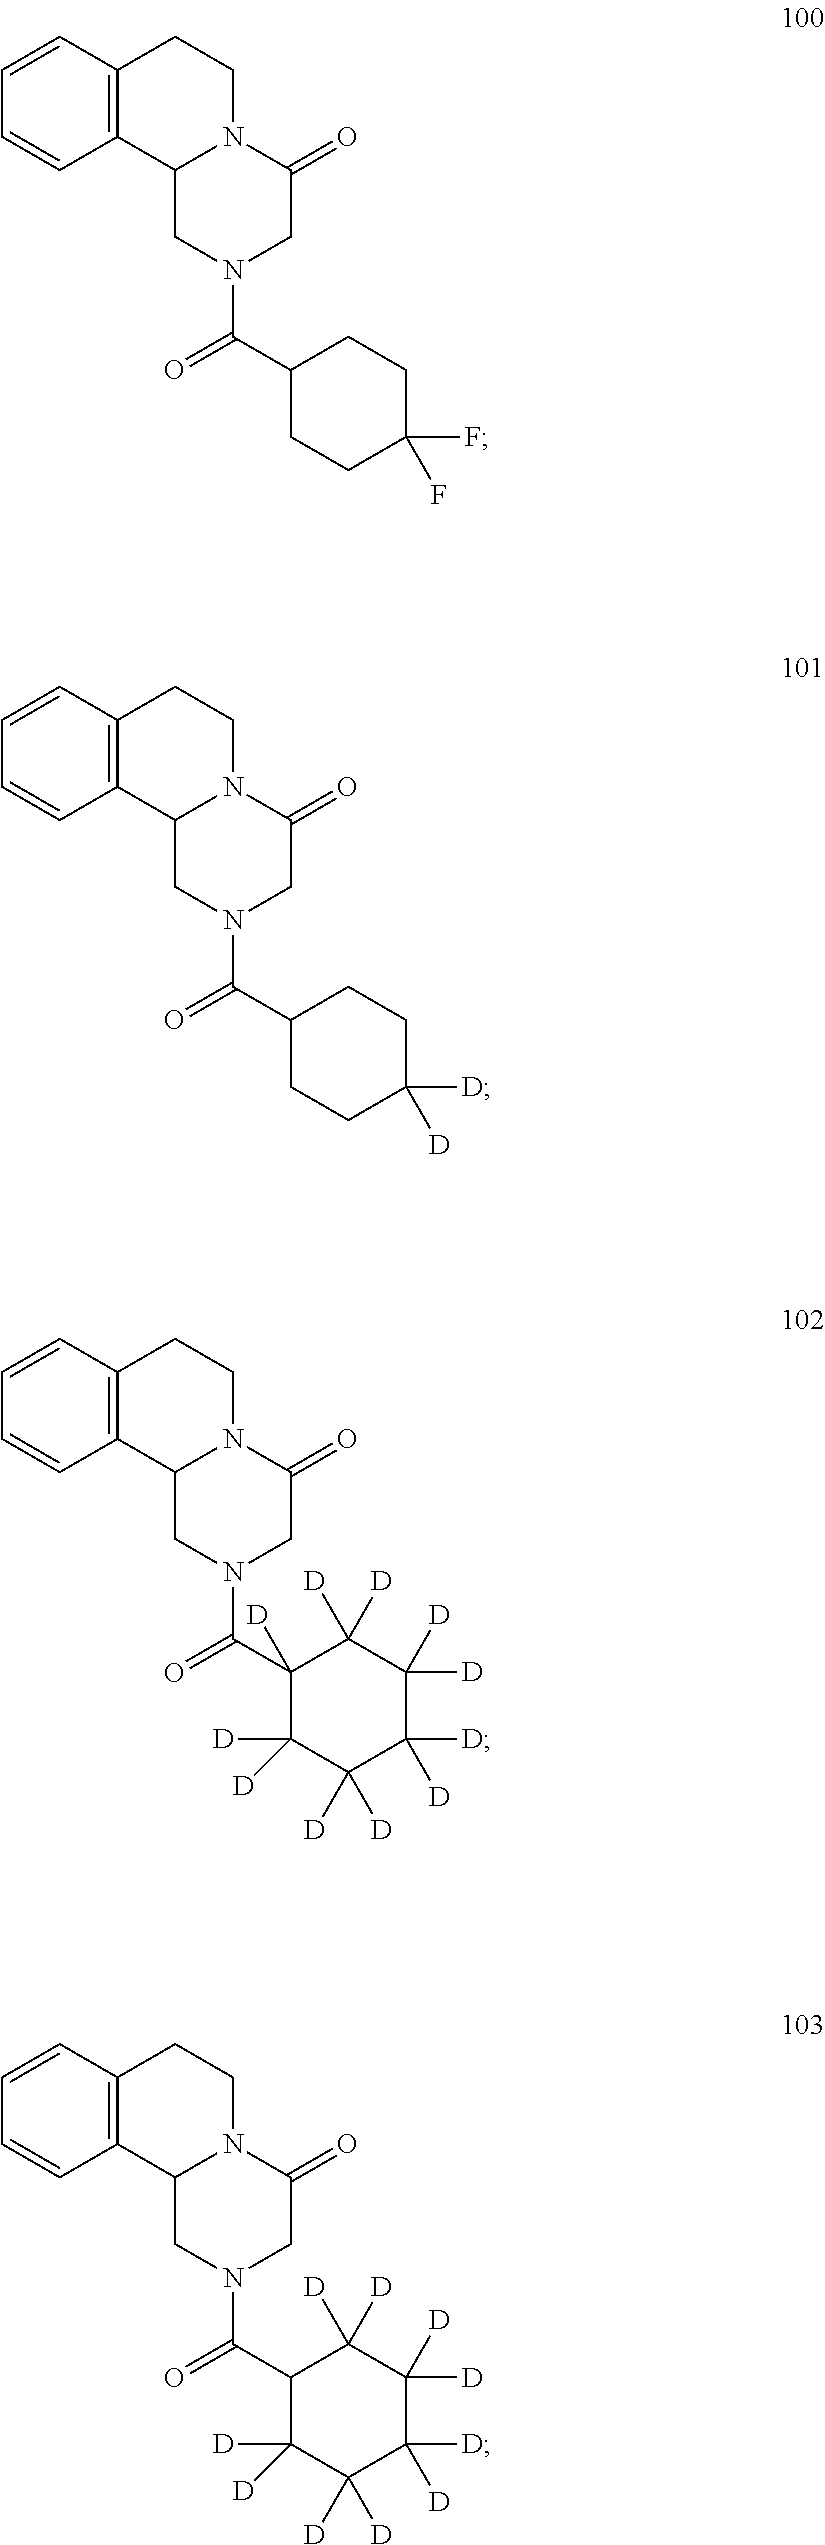 Deuterated pyrazinoisoquinoline compounds